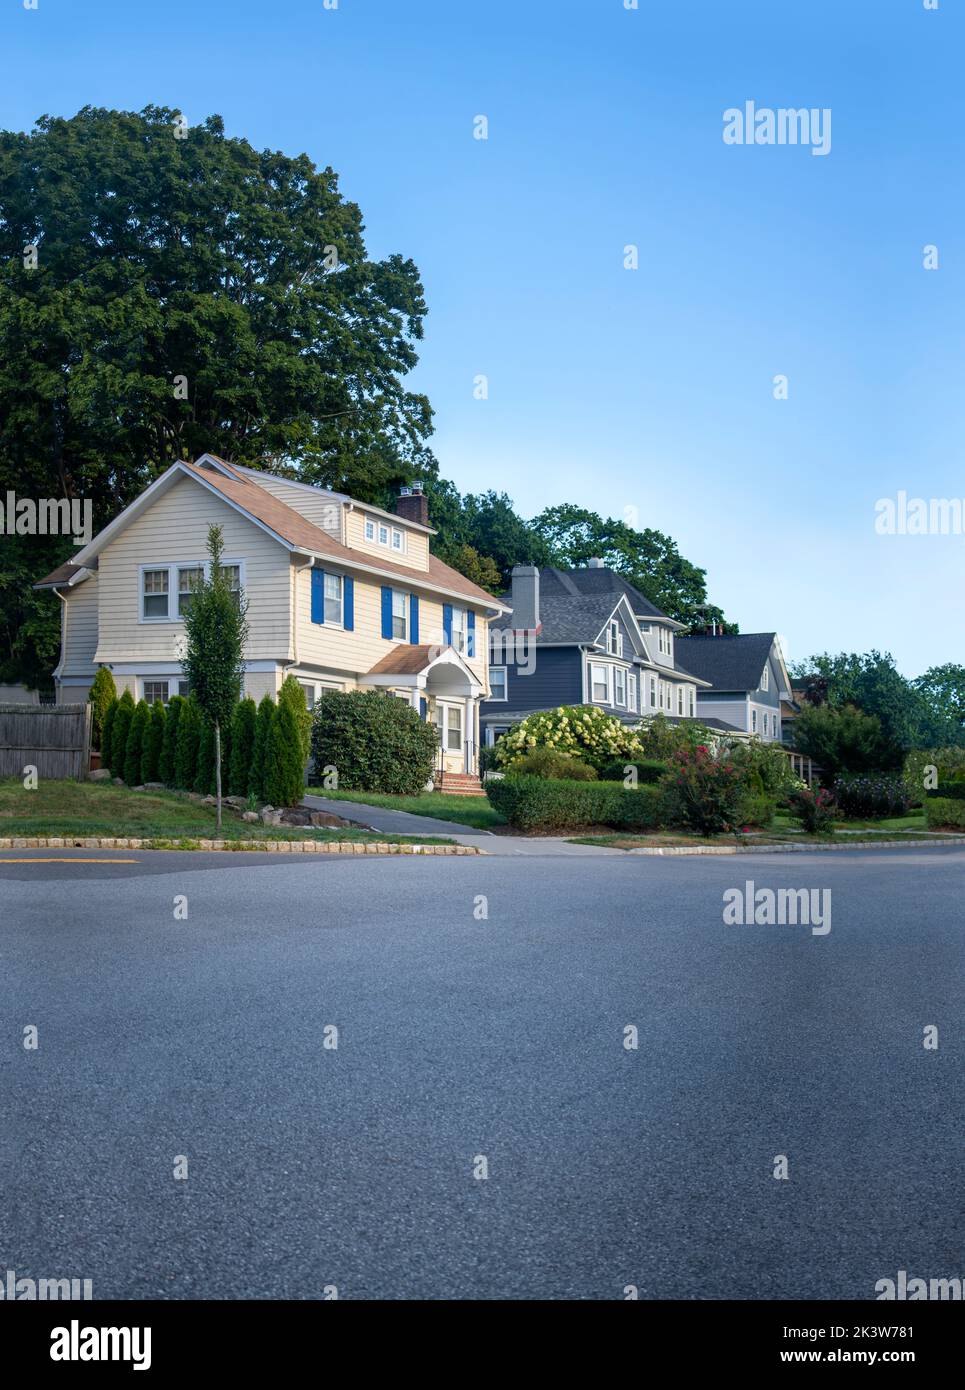 Vista de la carretera de la línea de casas en un entorno suburbano al aire libre con hierba, árboles y cielo azul claro Foto de stock